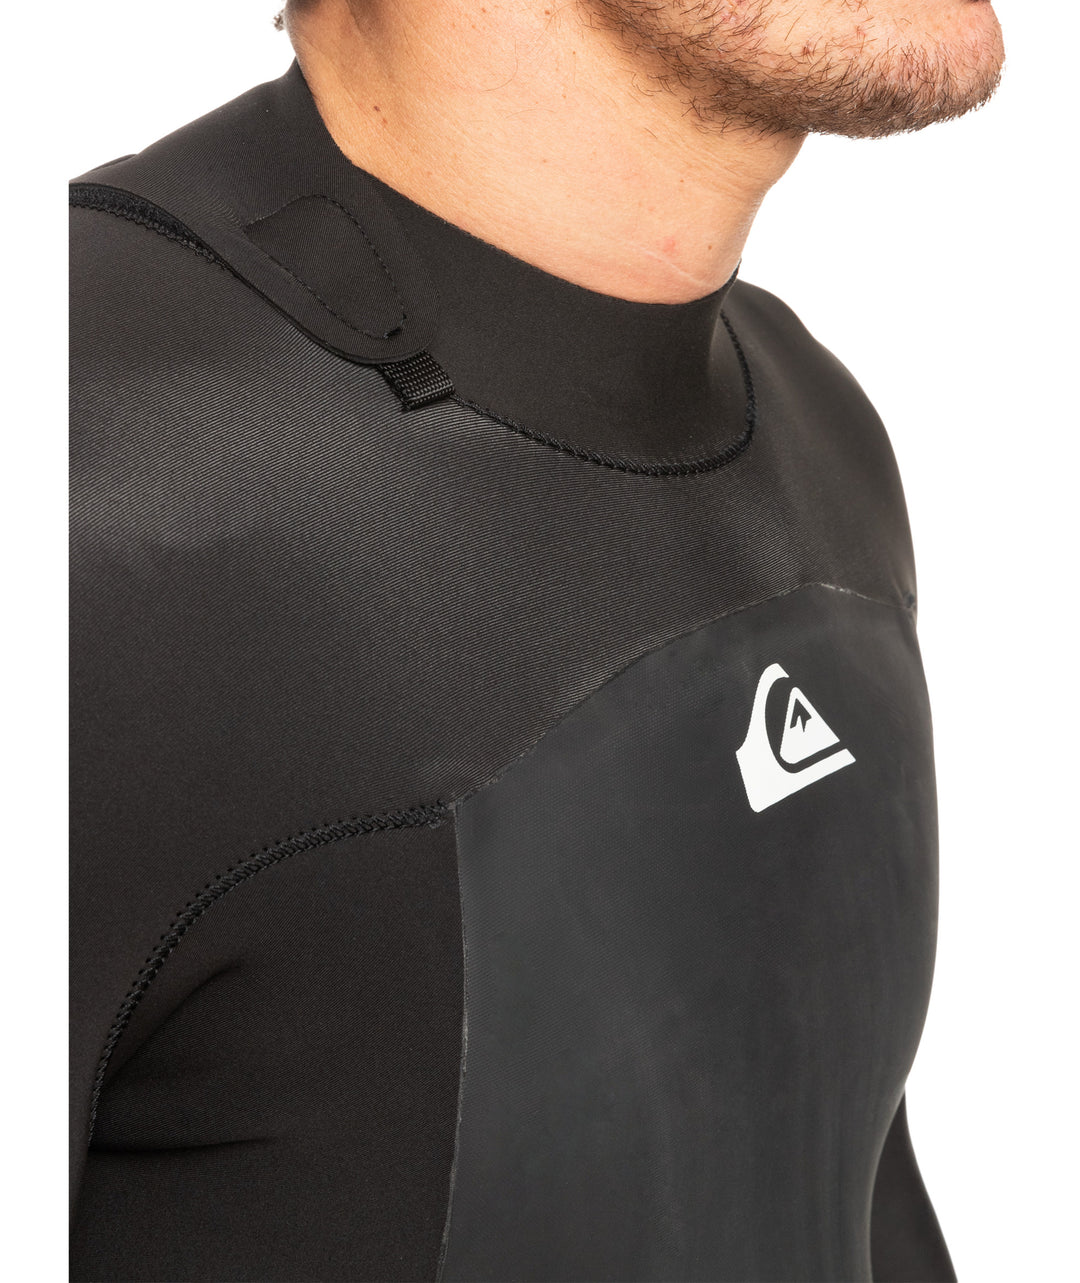 Prologue 3/2 Sealed Steamer Wetsuit - Black